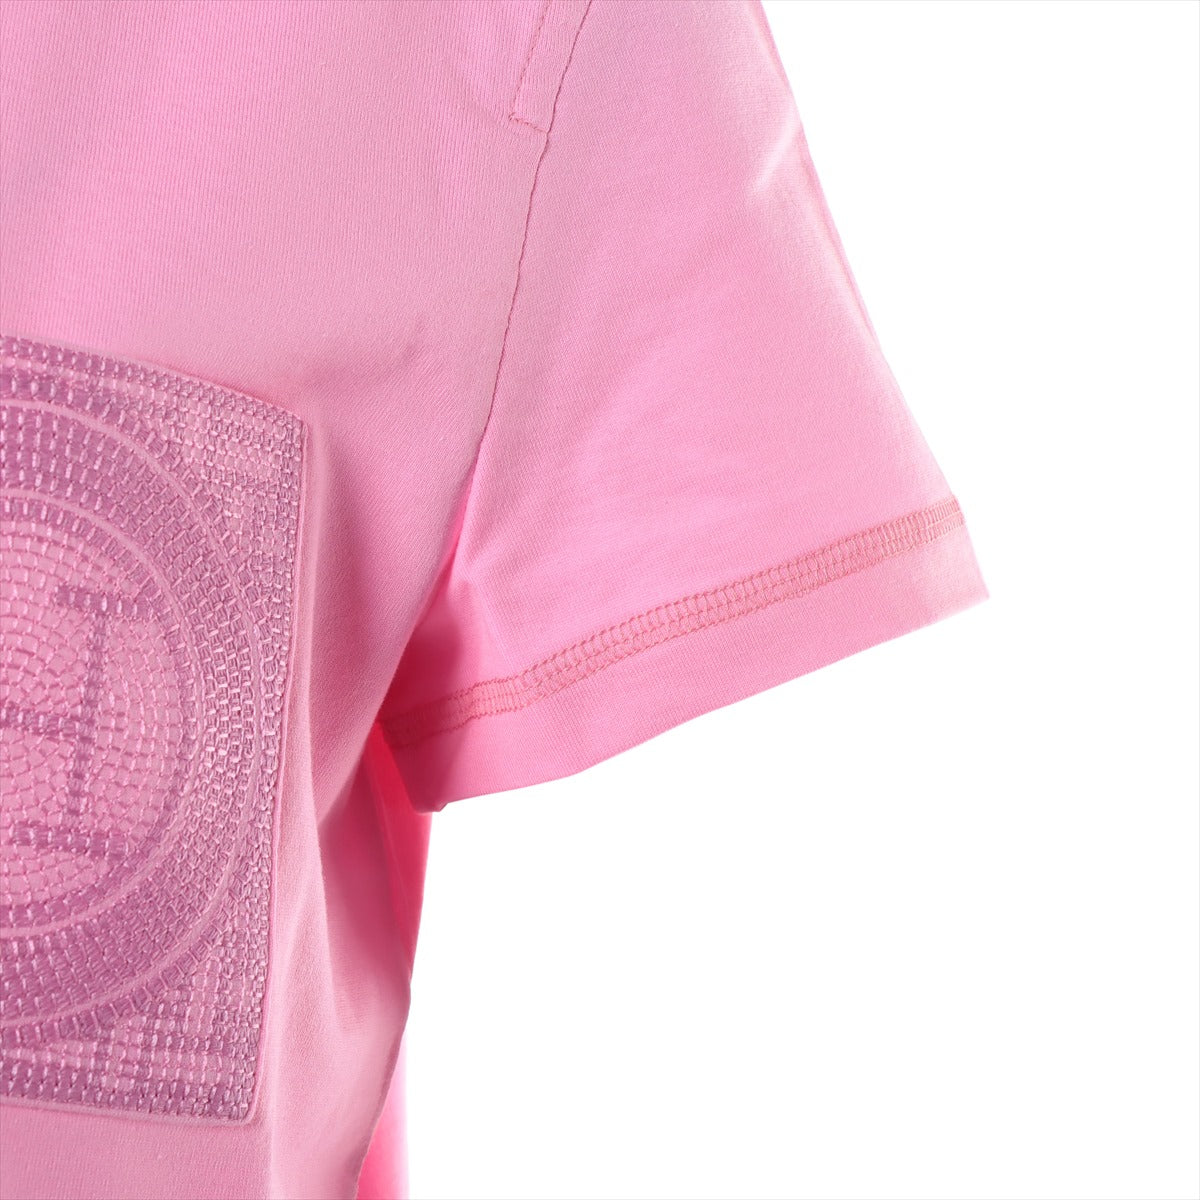 エルメス コットン Tシャツ 38 レディース ピンク